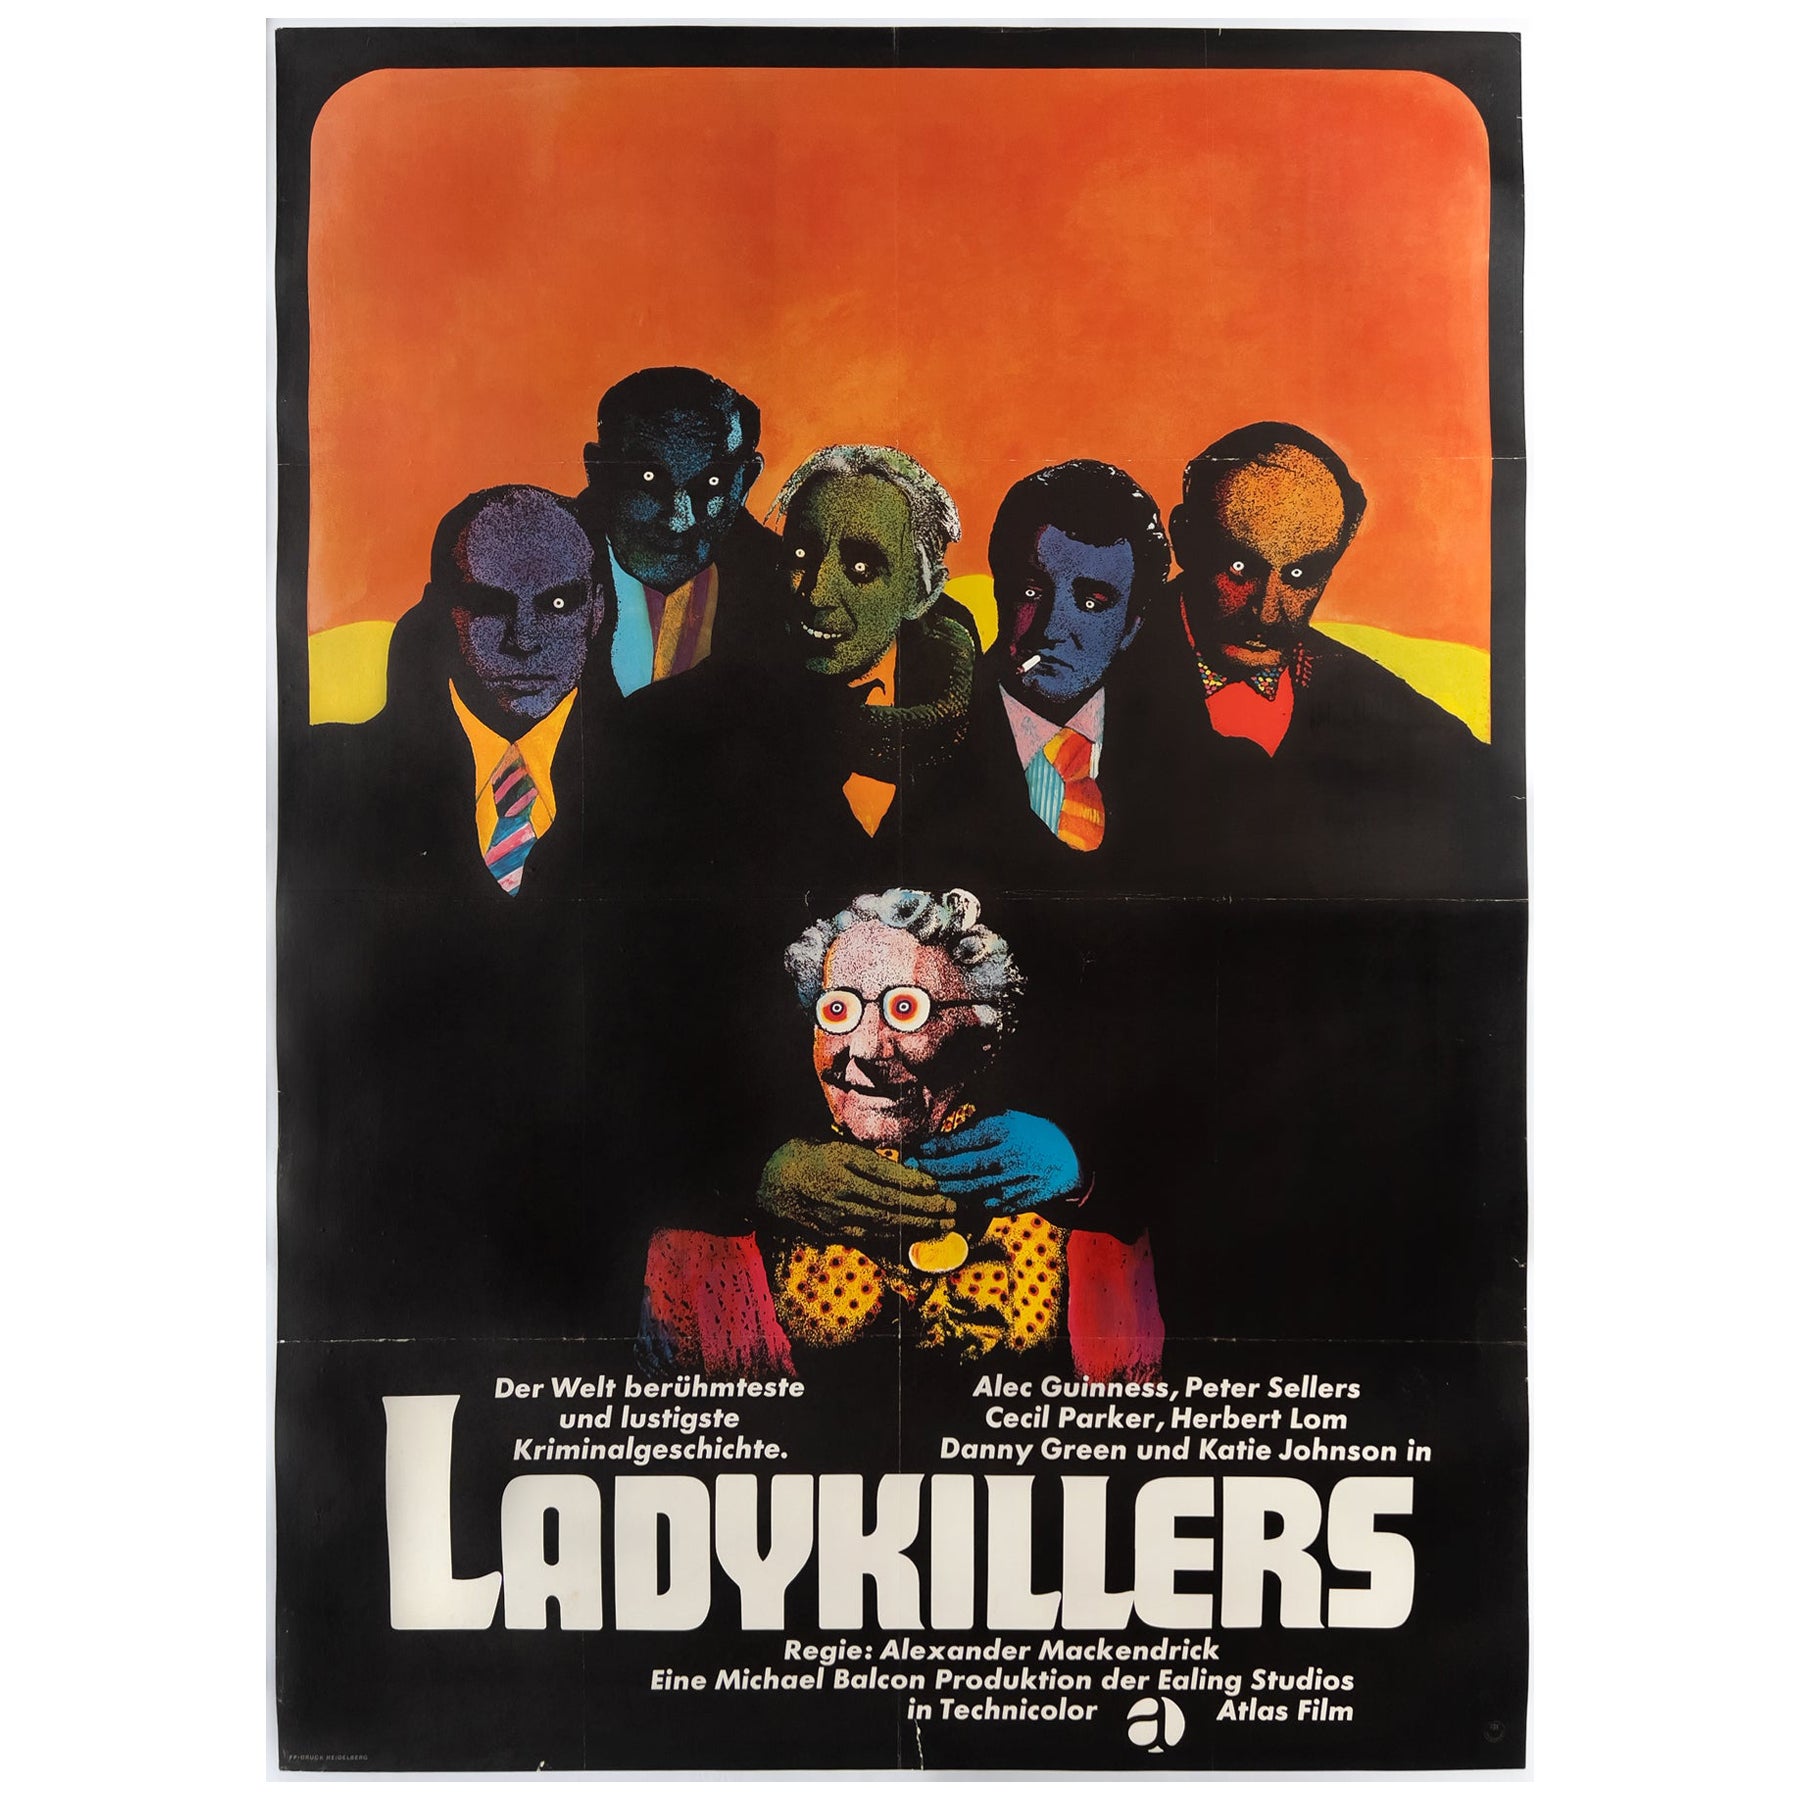 The LadyKillers R1960s German A0 Film Movie Poster, Heinz Edelmann